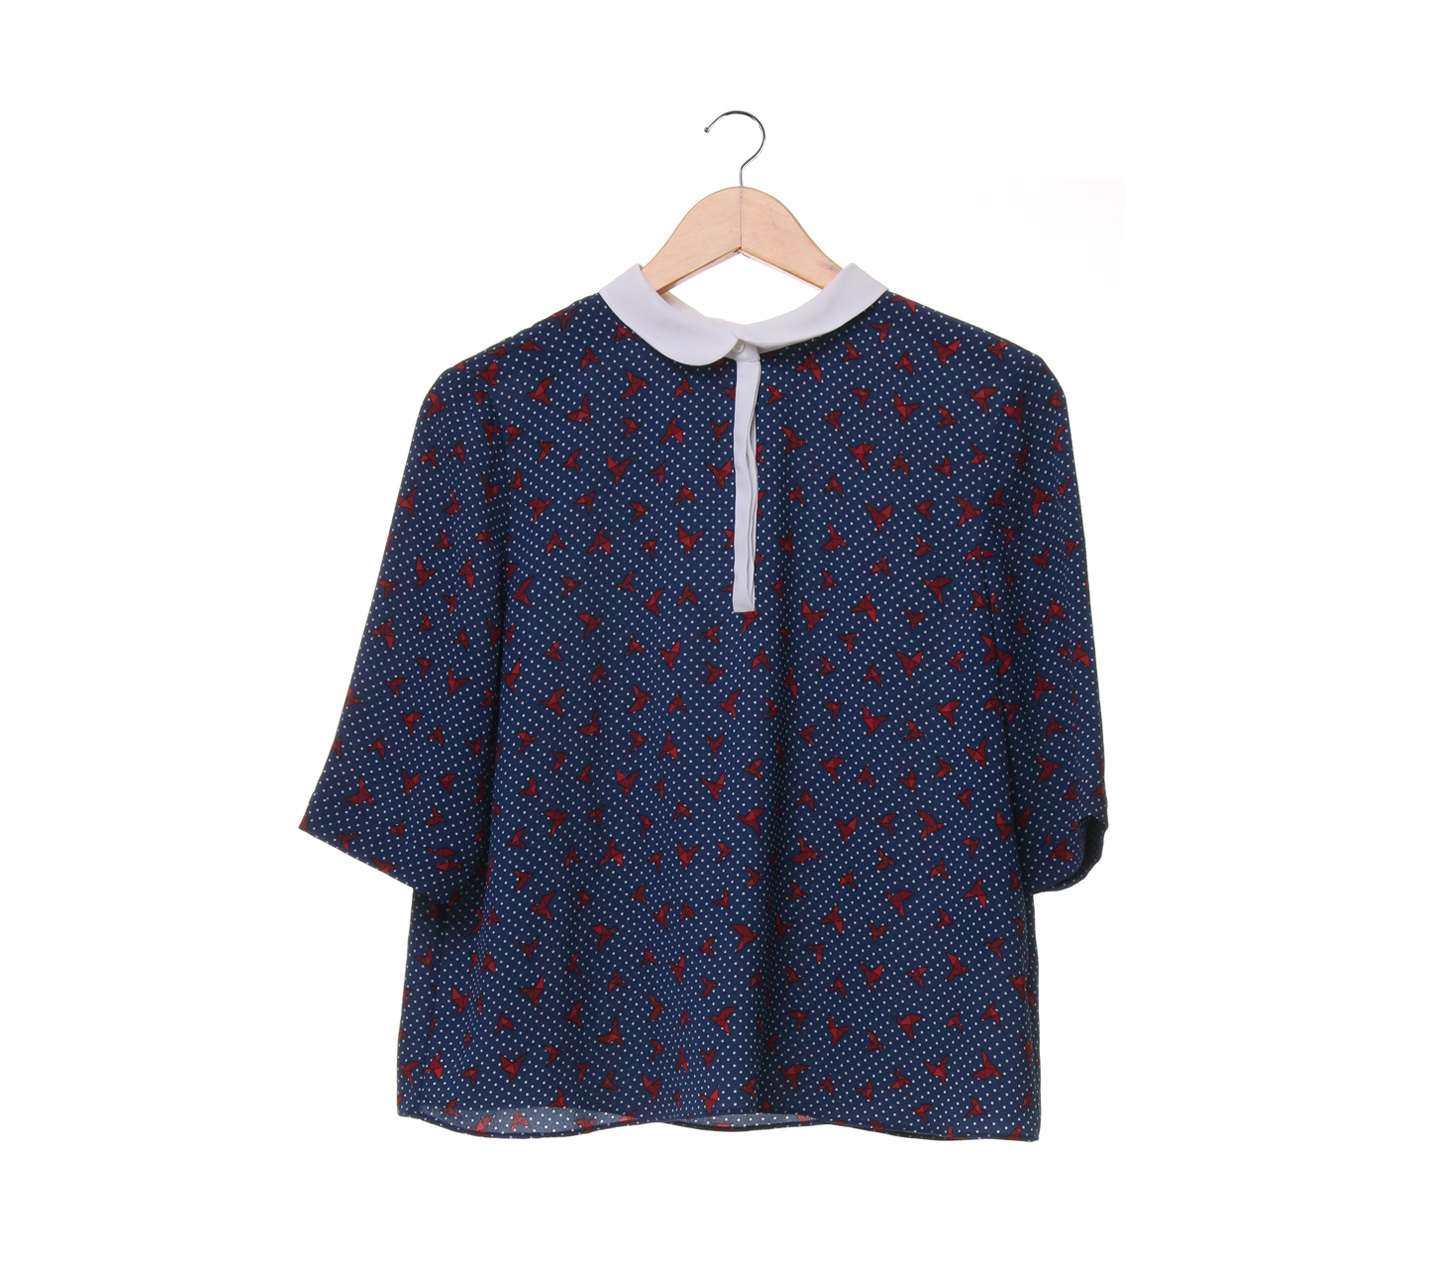 Zara pattern navy blouse 